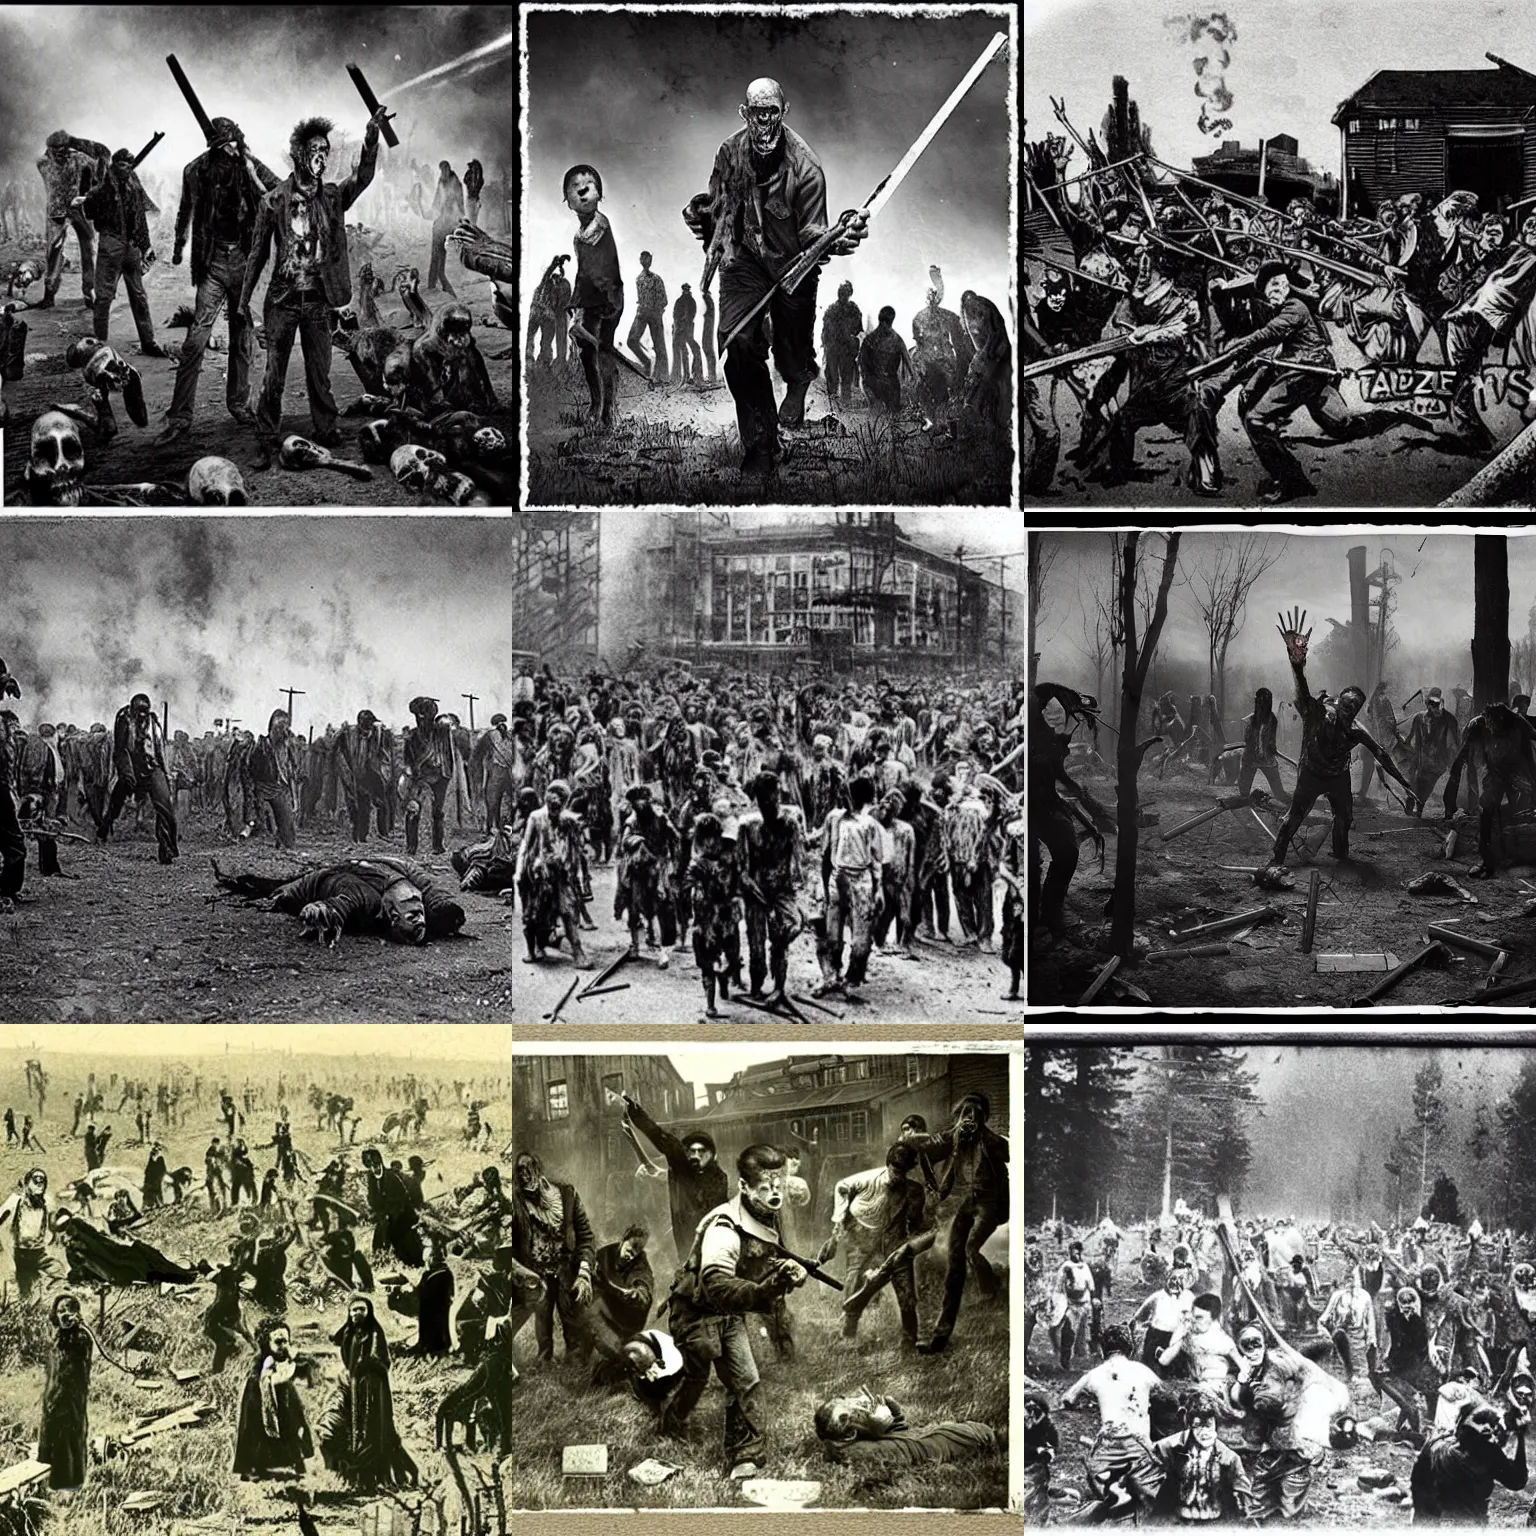 Prompt: “zombie apocalypse, 1900’s photo”